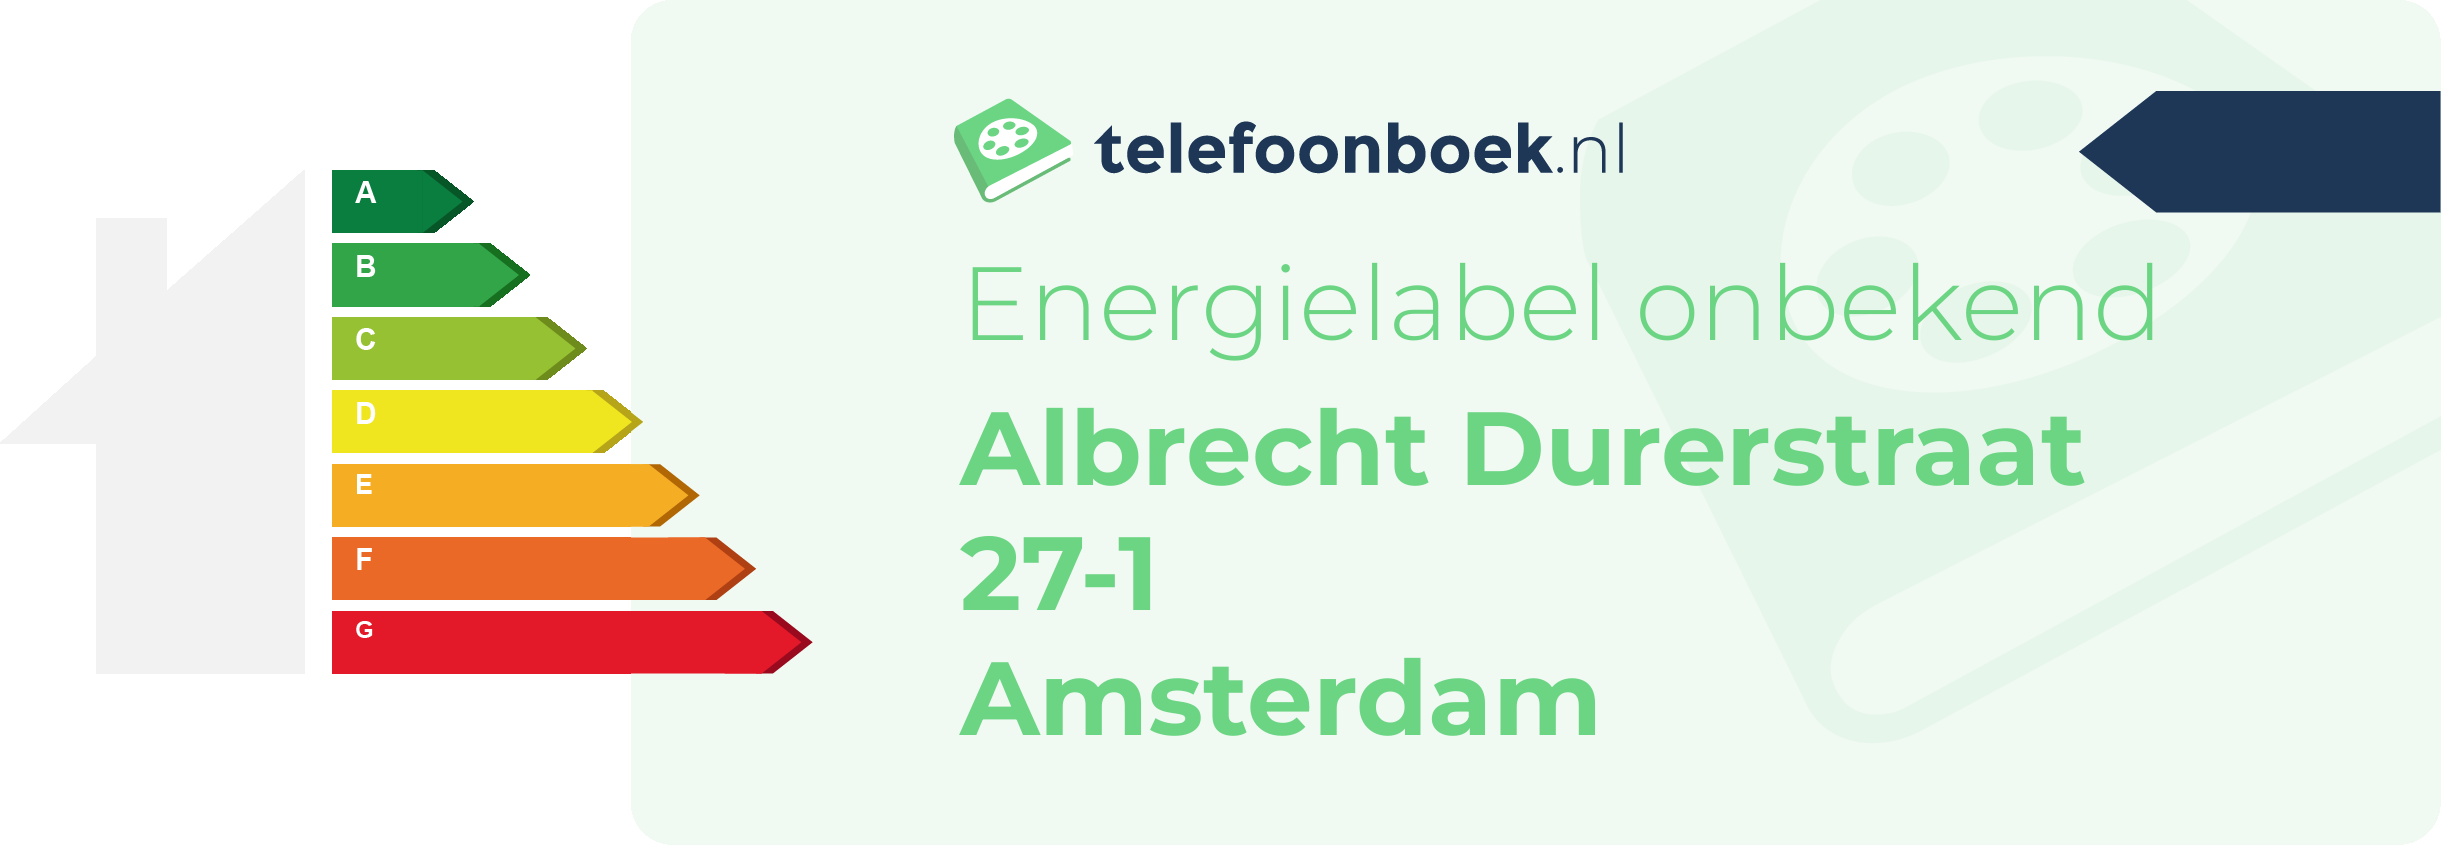 Energielabel Albrecht Durerstraat 27-1 Amsterdam